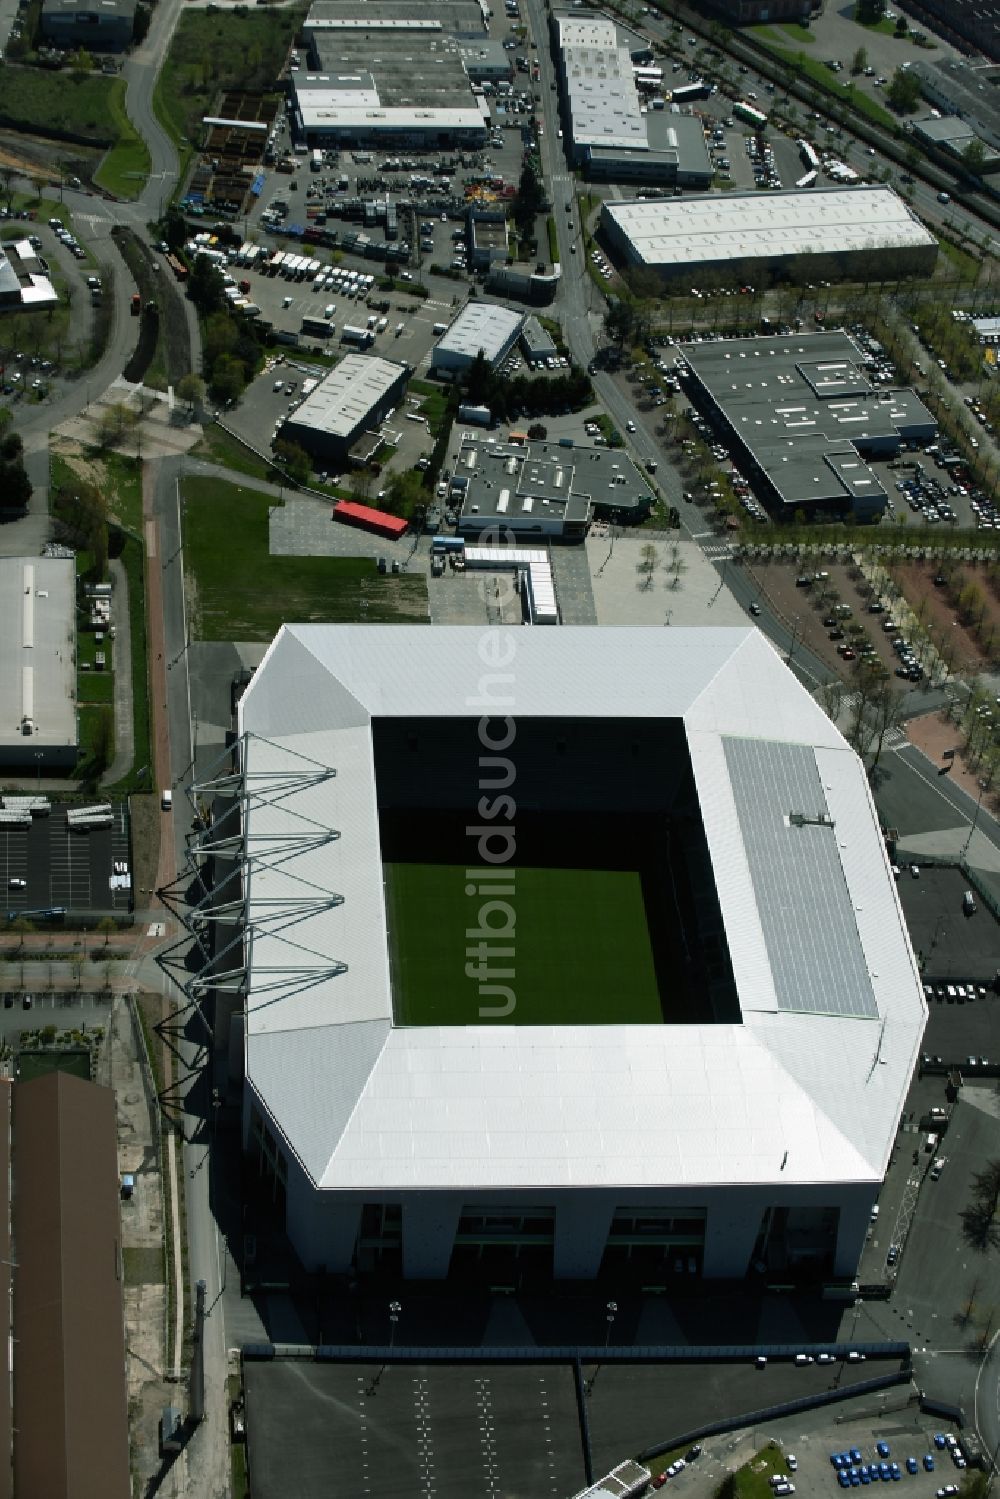 Luftaufnahme Saint-Etienne - Sportstätten-Gelände der Arena des Stadion in Saint-Etienne in Auvergne Rhone-Alpes, Frankreich